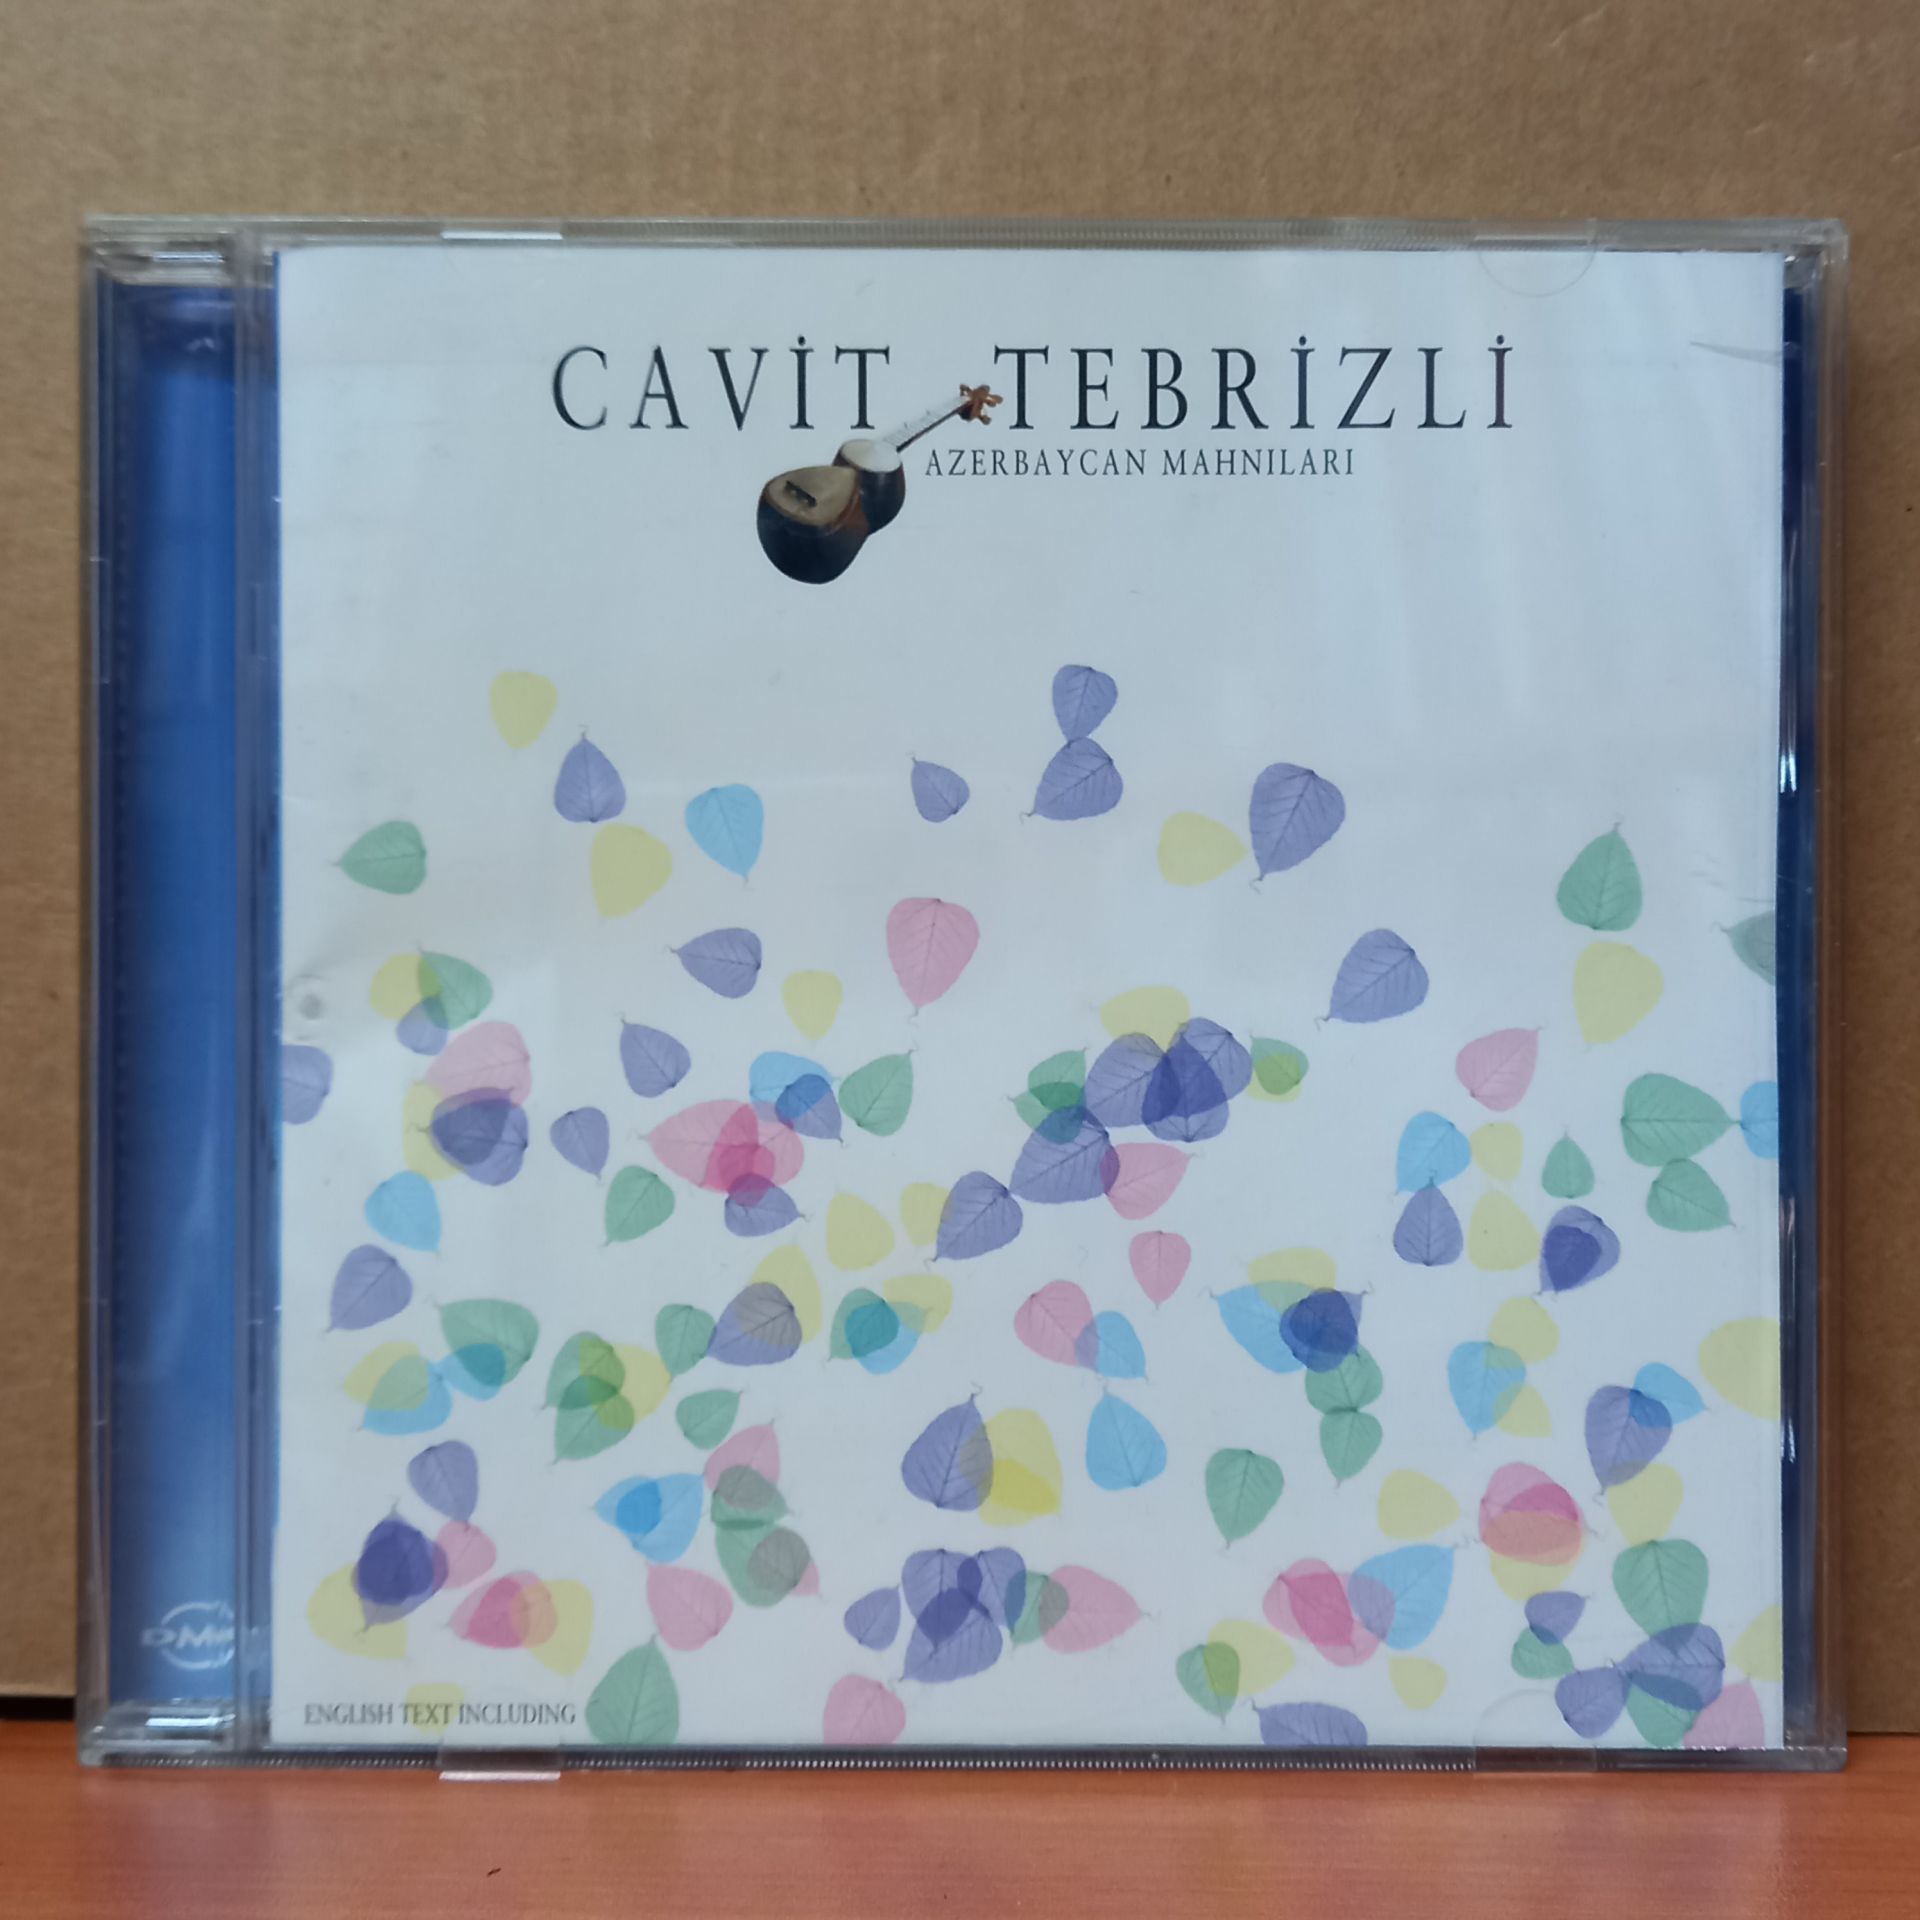 CAVİT TEBRİZLİ - AZERBAYCAN MAHNILARI - CD 2.EL